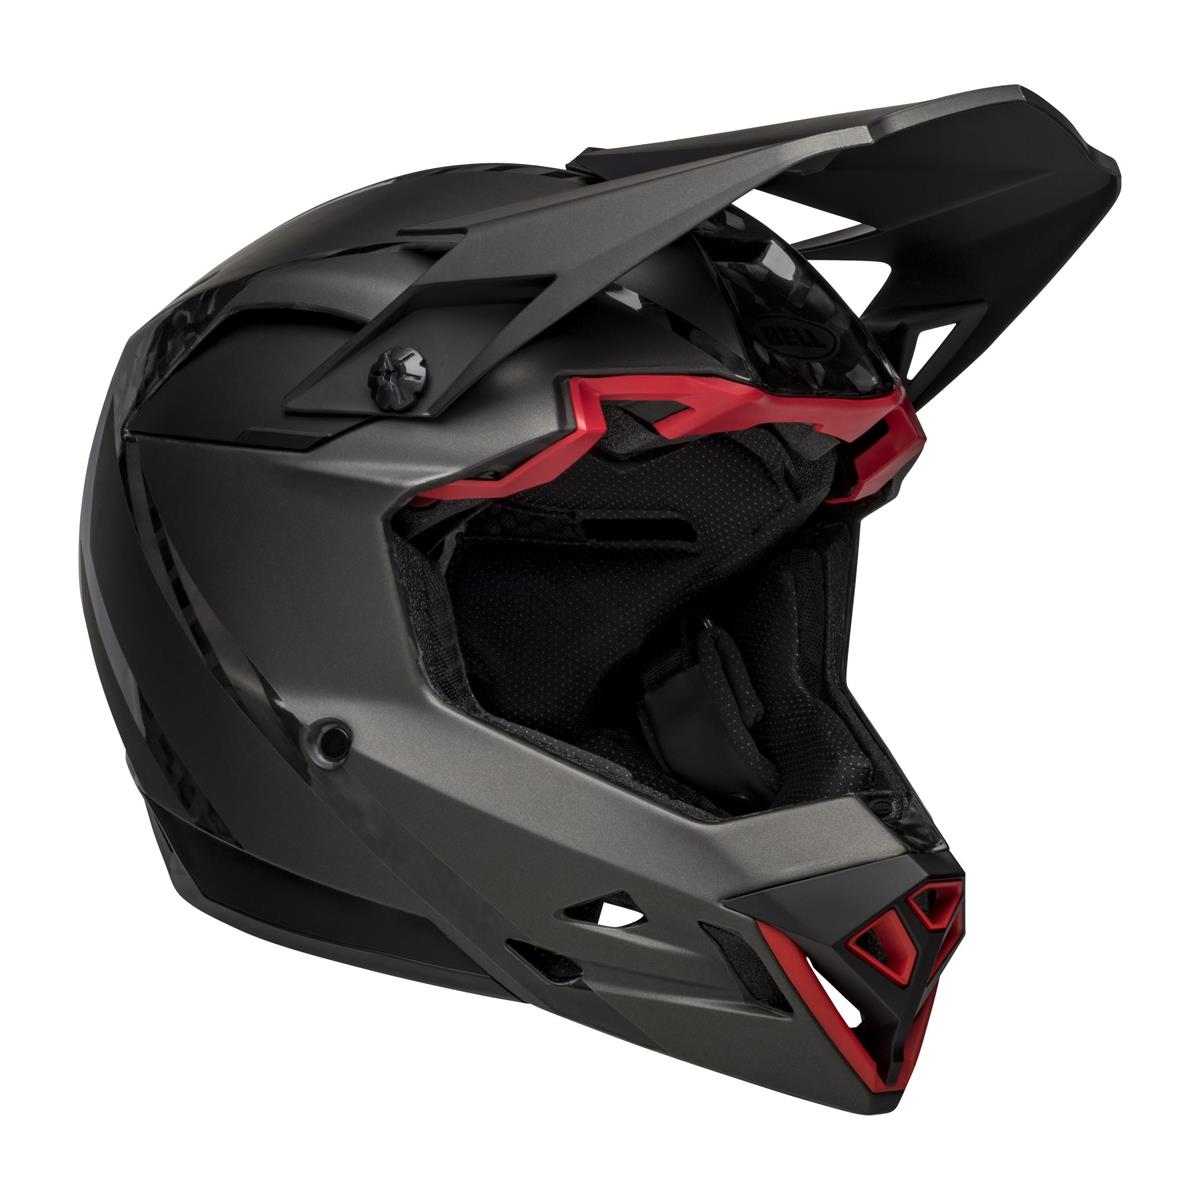 Full-10 Spherical Arise Matte / Gloss Black Carbon Full Face Helmet Size M (55-57cm)